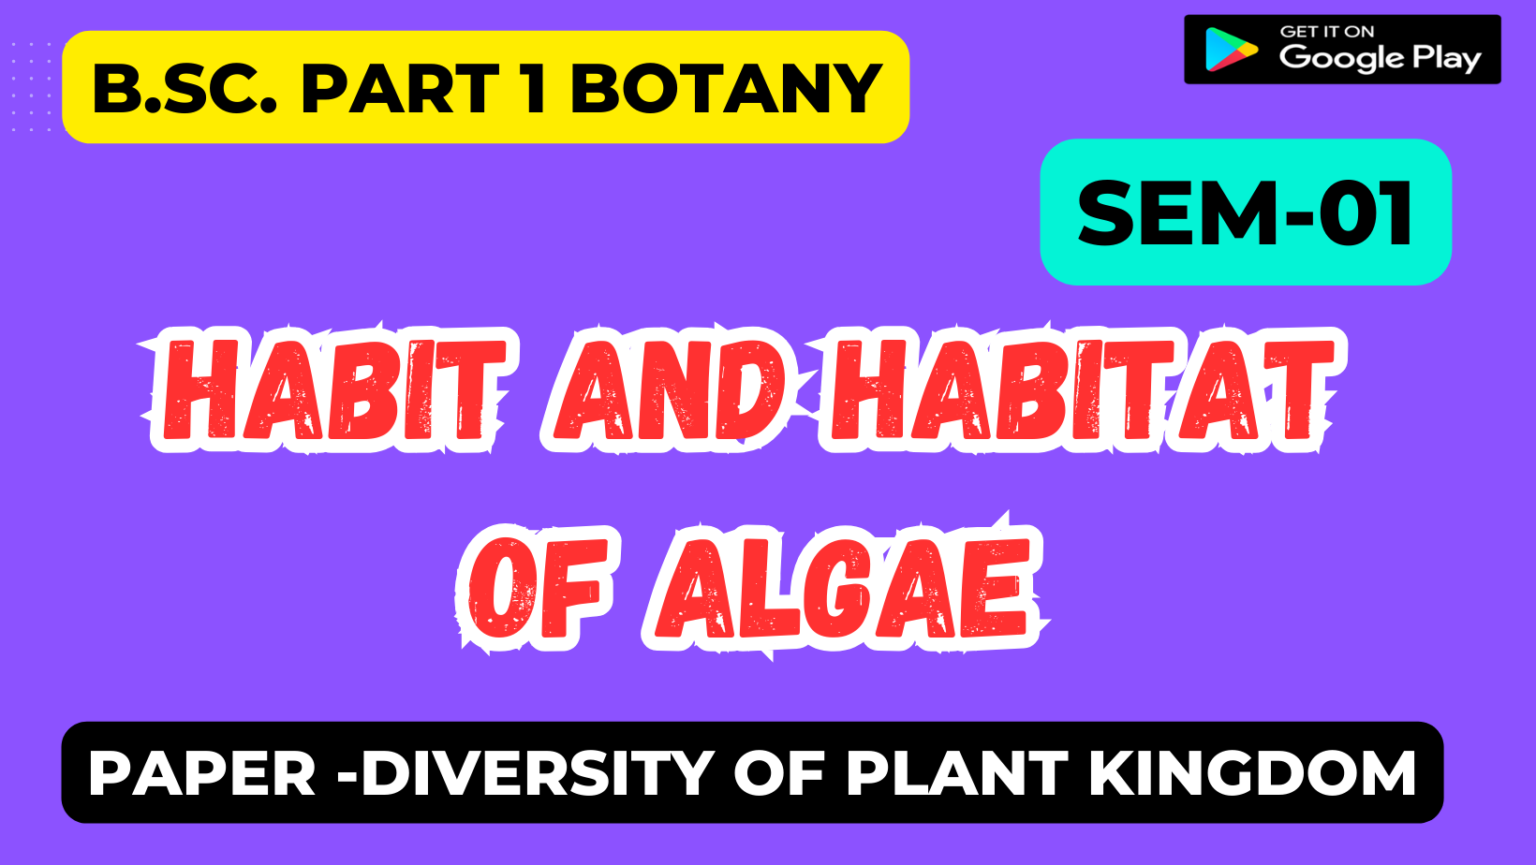 Habit and Habitat of Algae